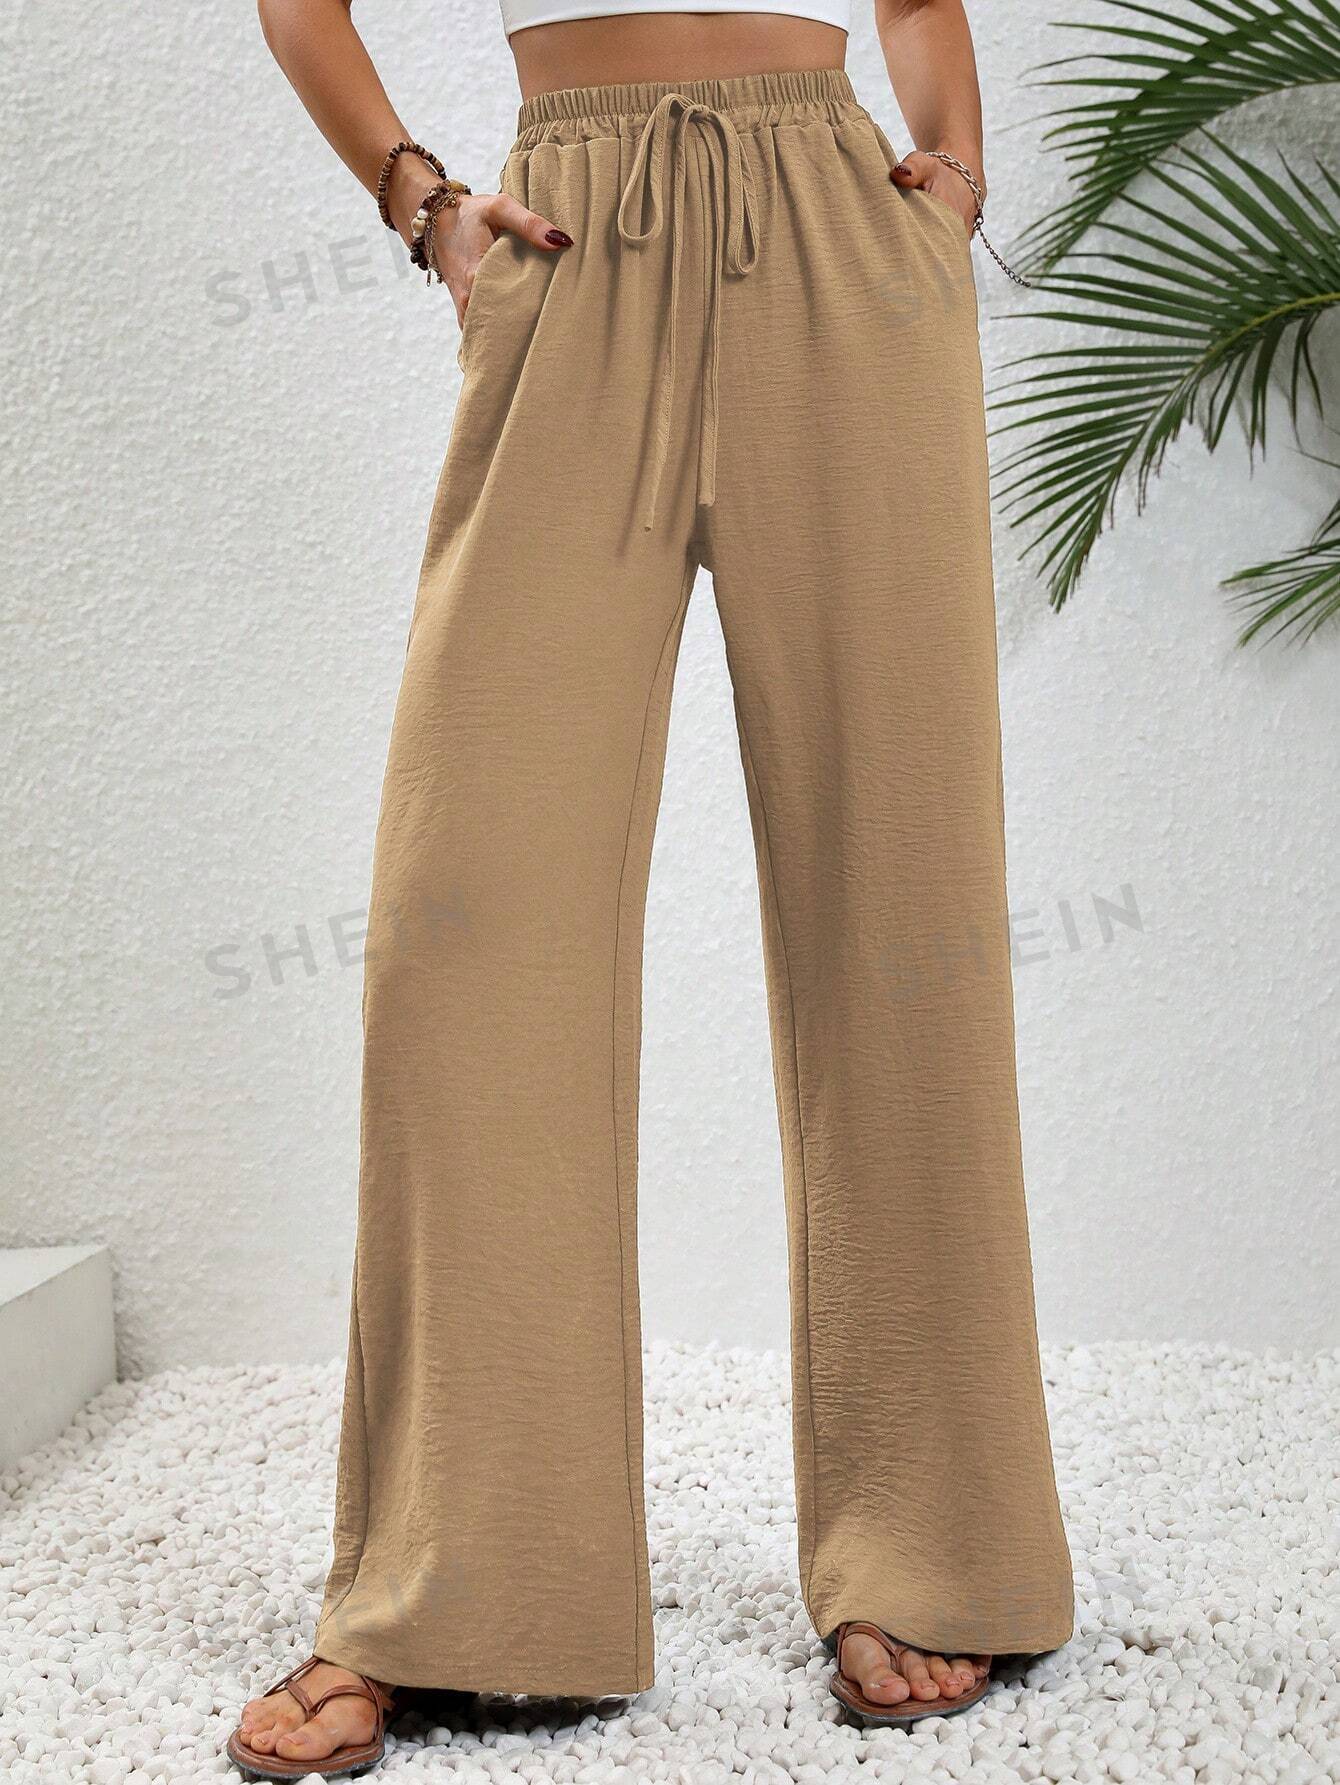 SHEIN LUNE женские однотонные длинные брюки с завышенной талией и завязками на талии и карманами, хаки